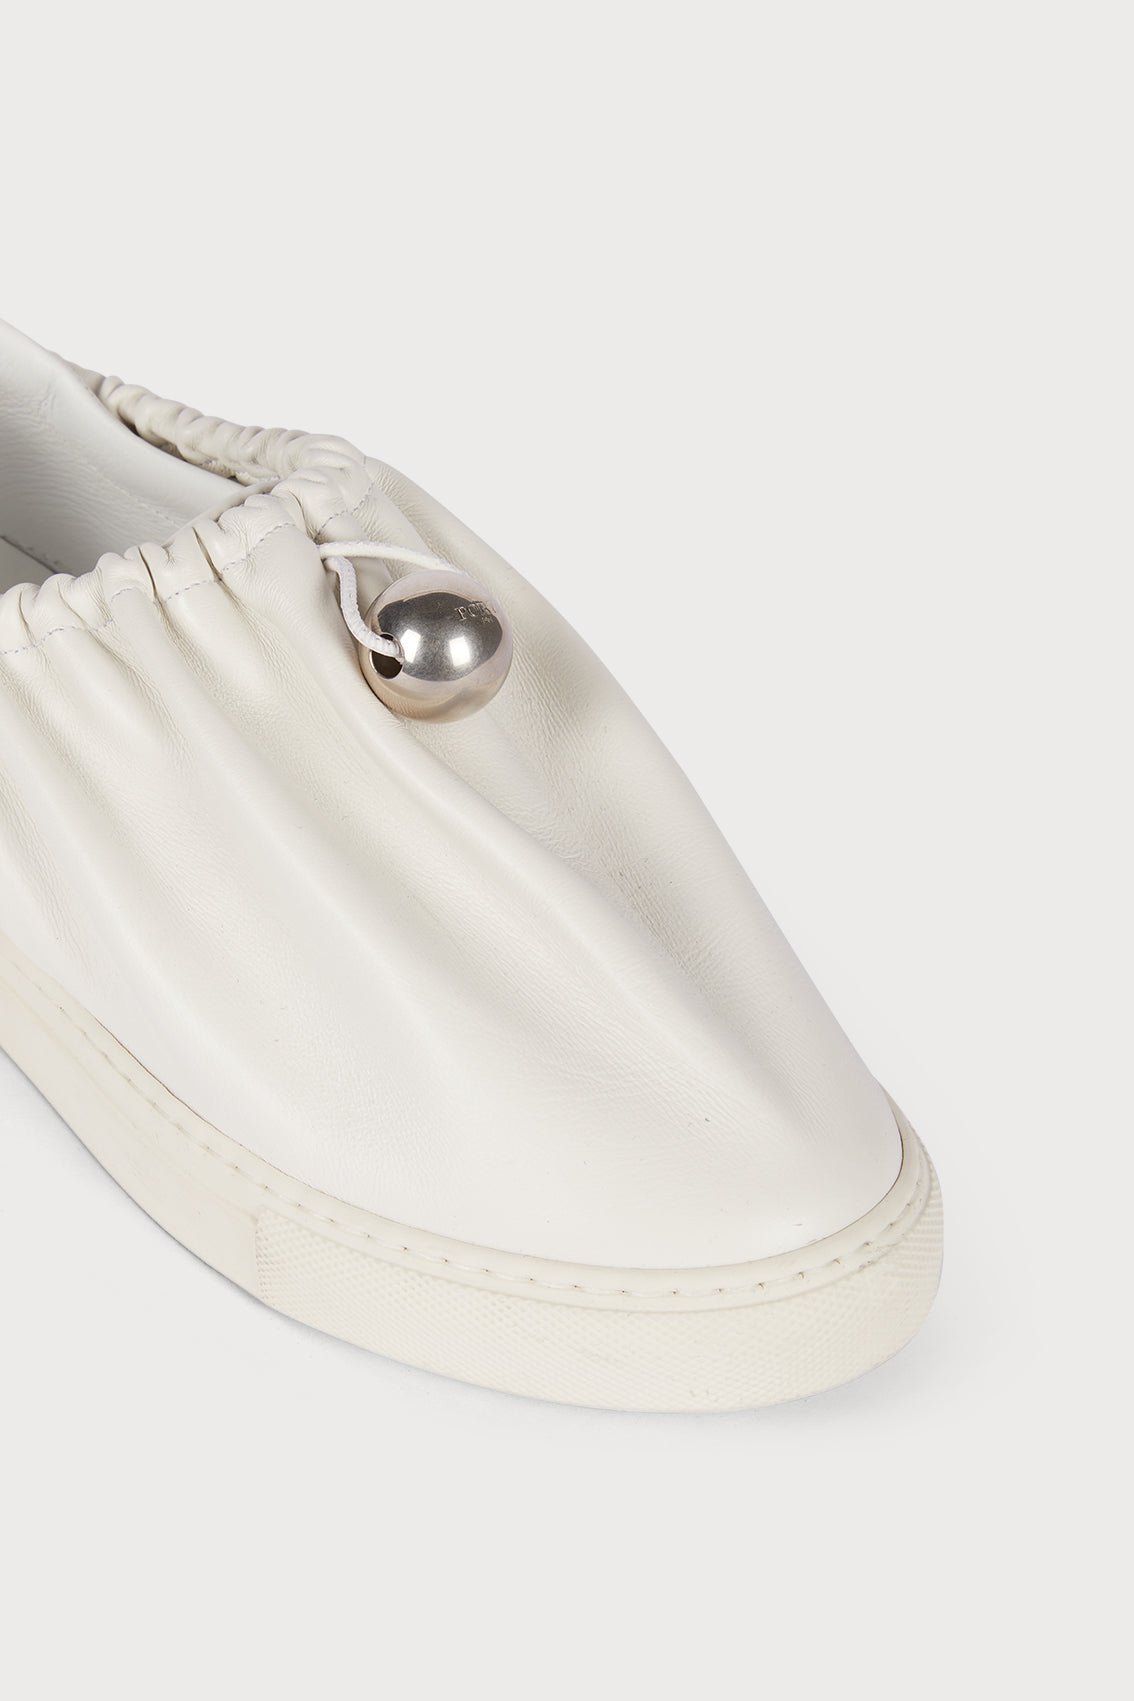 Slip-on Baggy Sneakers in Ivory